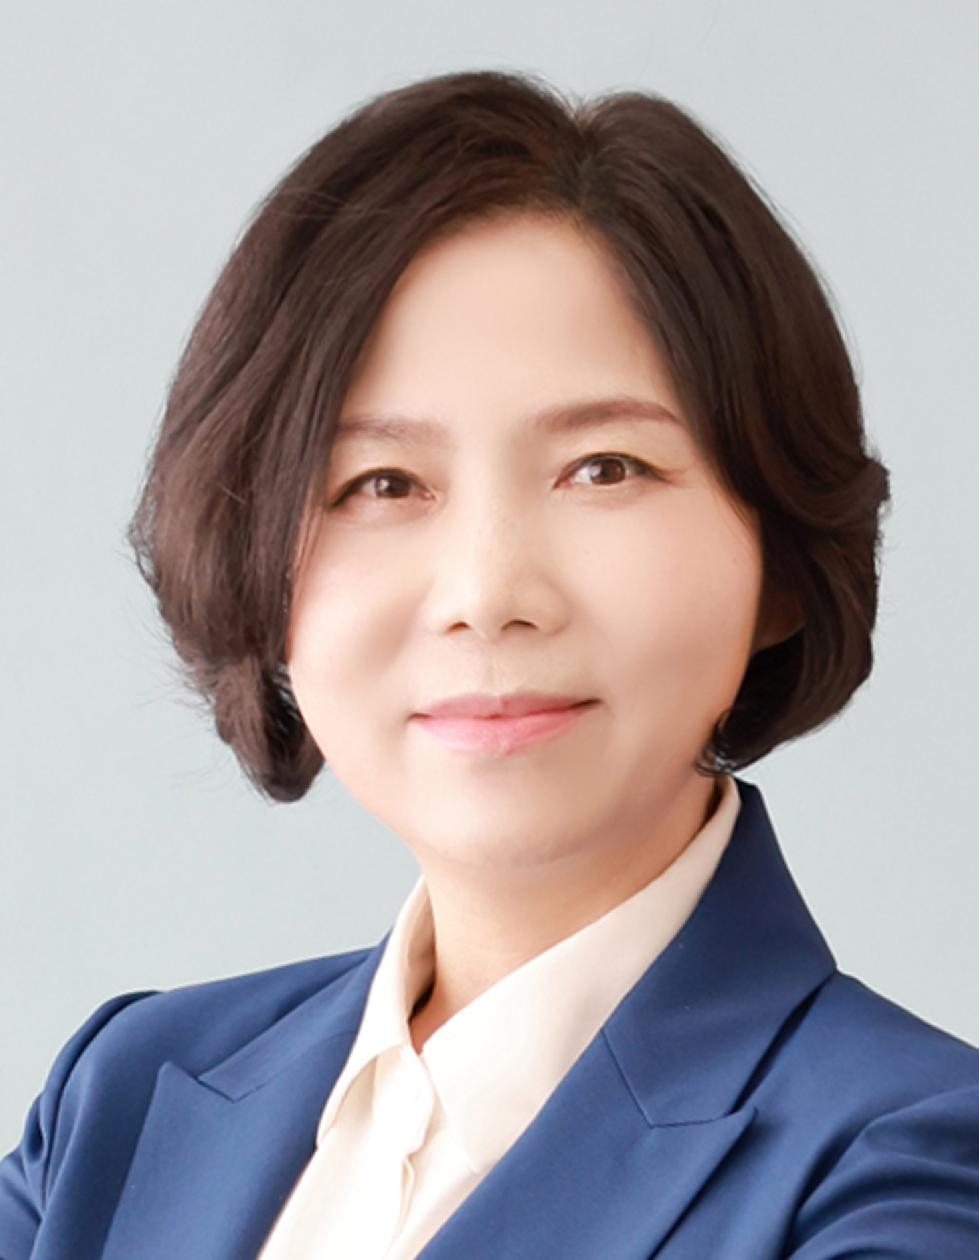 용인시의회 신현녀 의원 대표발의  ‘용인시 기후위기 대응을 위한 탄소중립